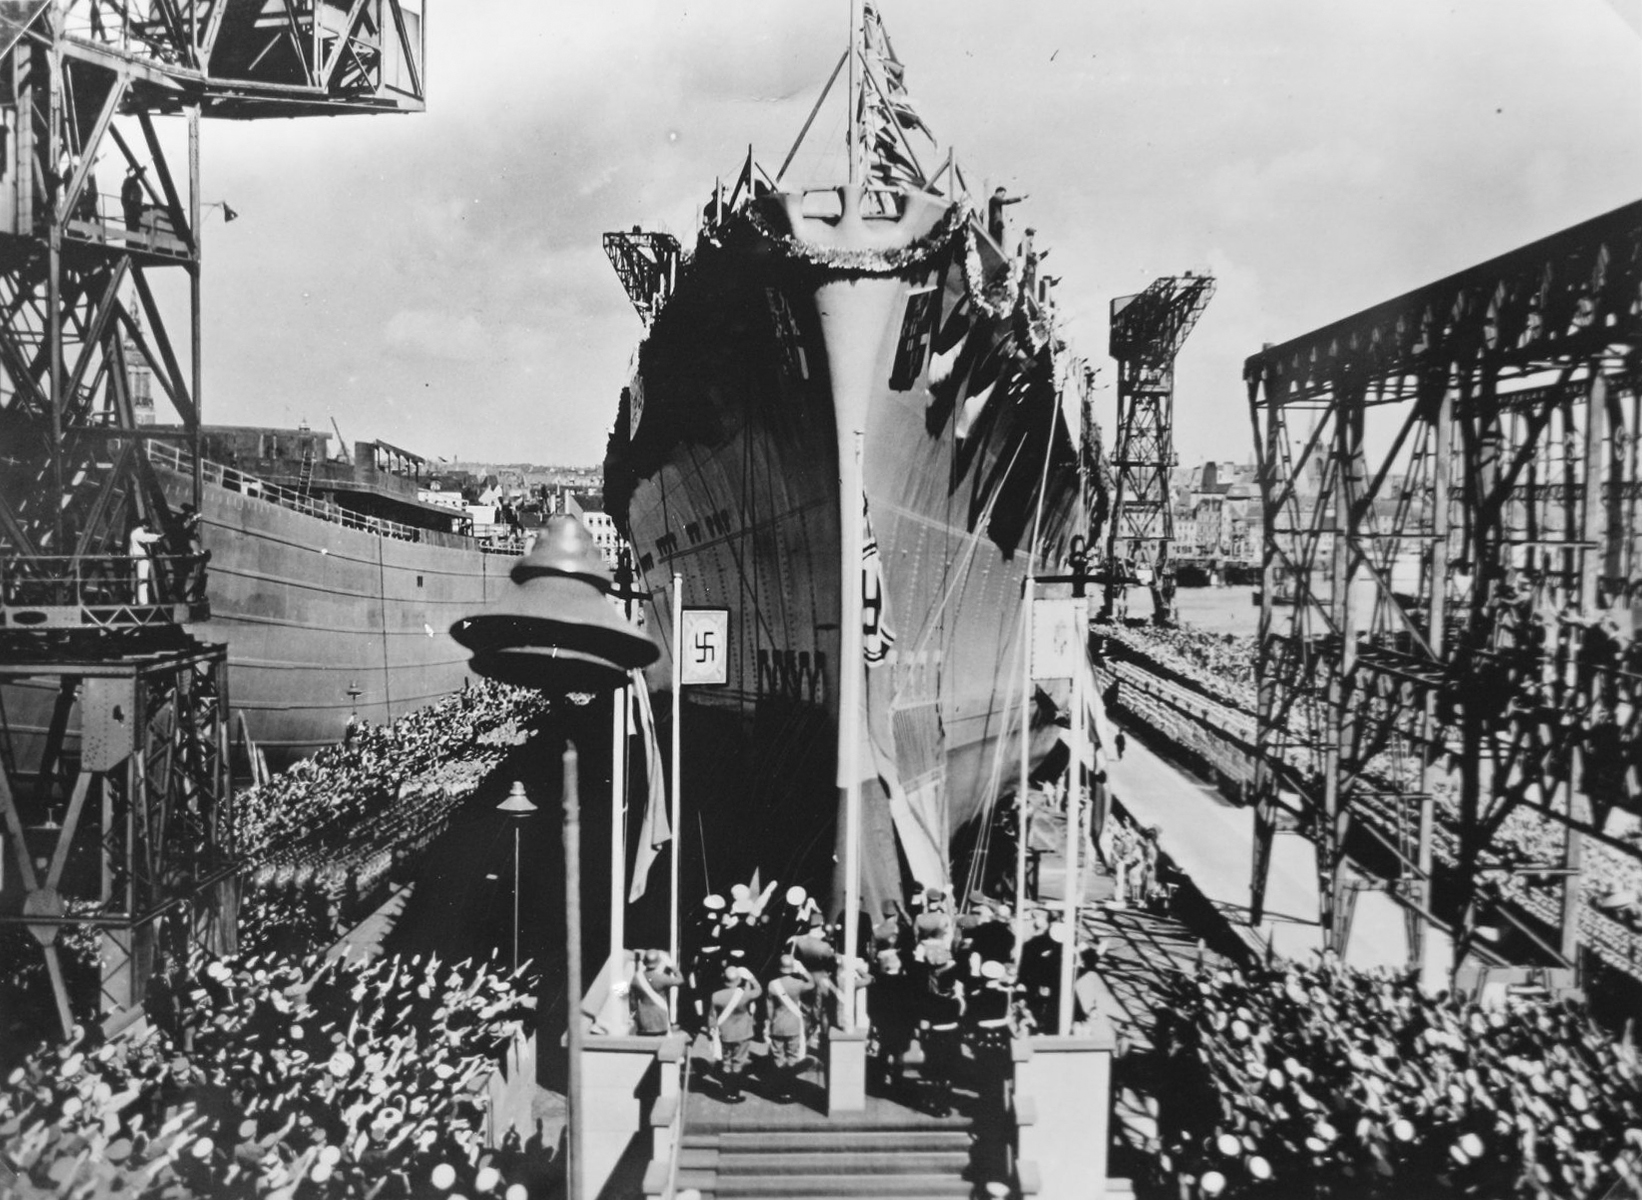 Launch of the heavy cruiser Prinz Eugen